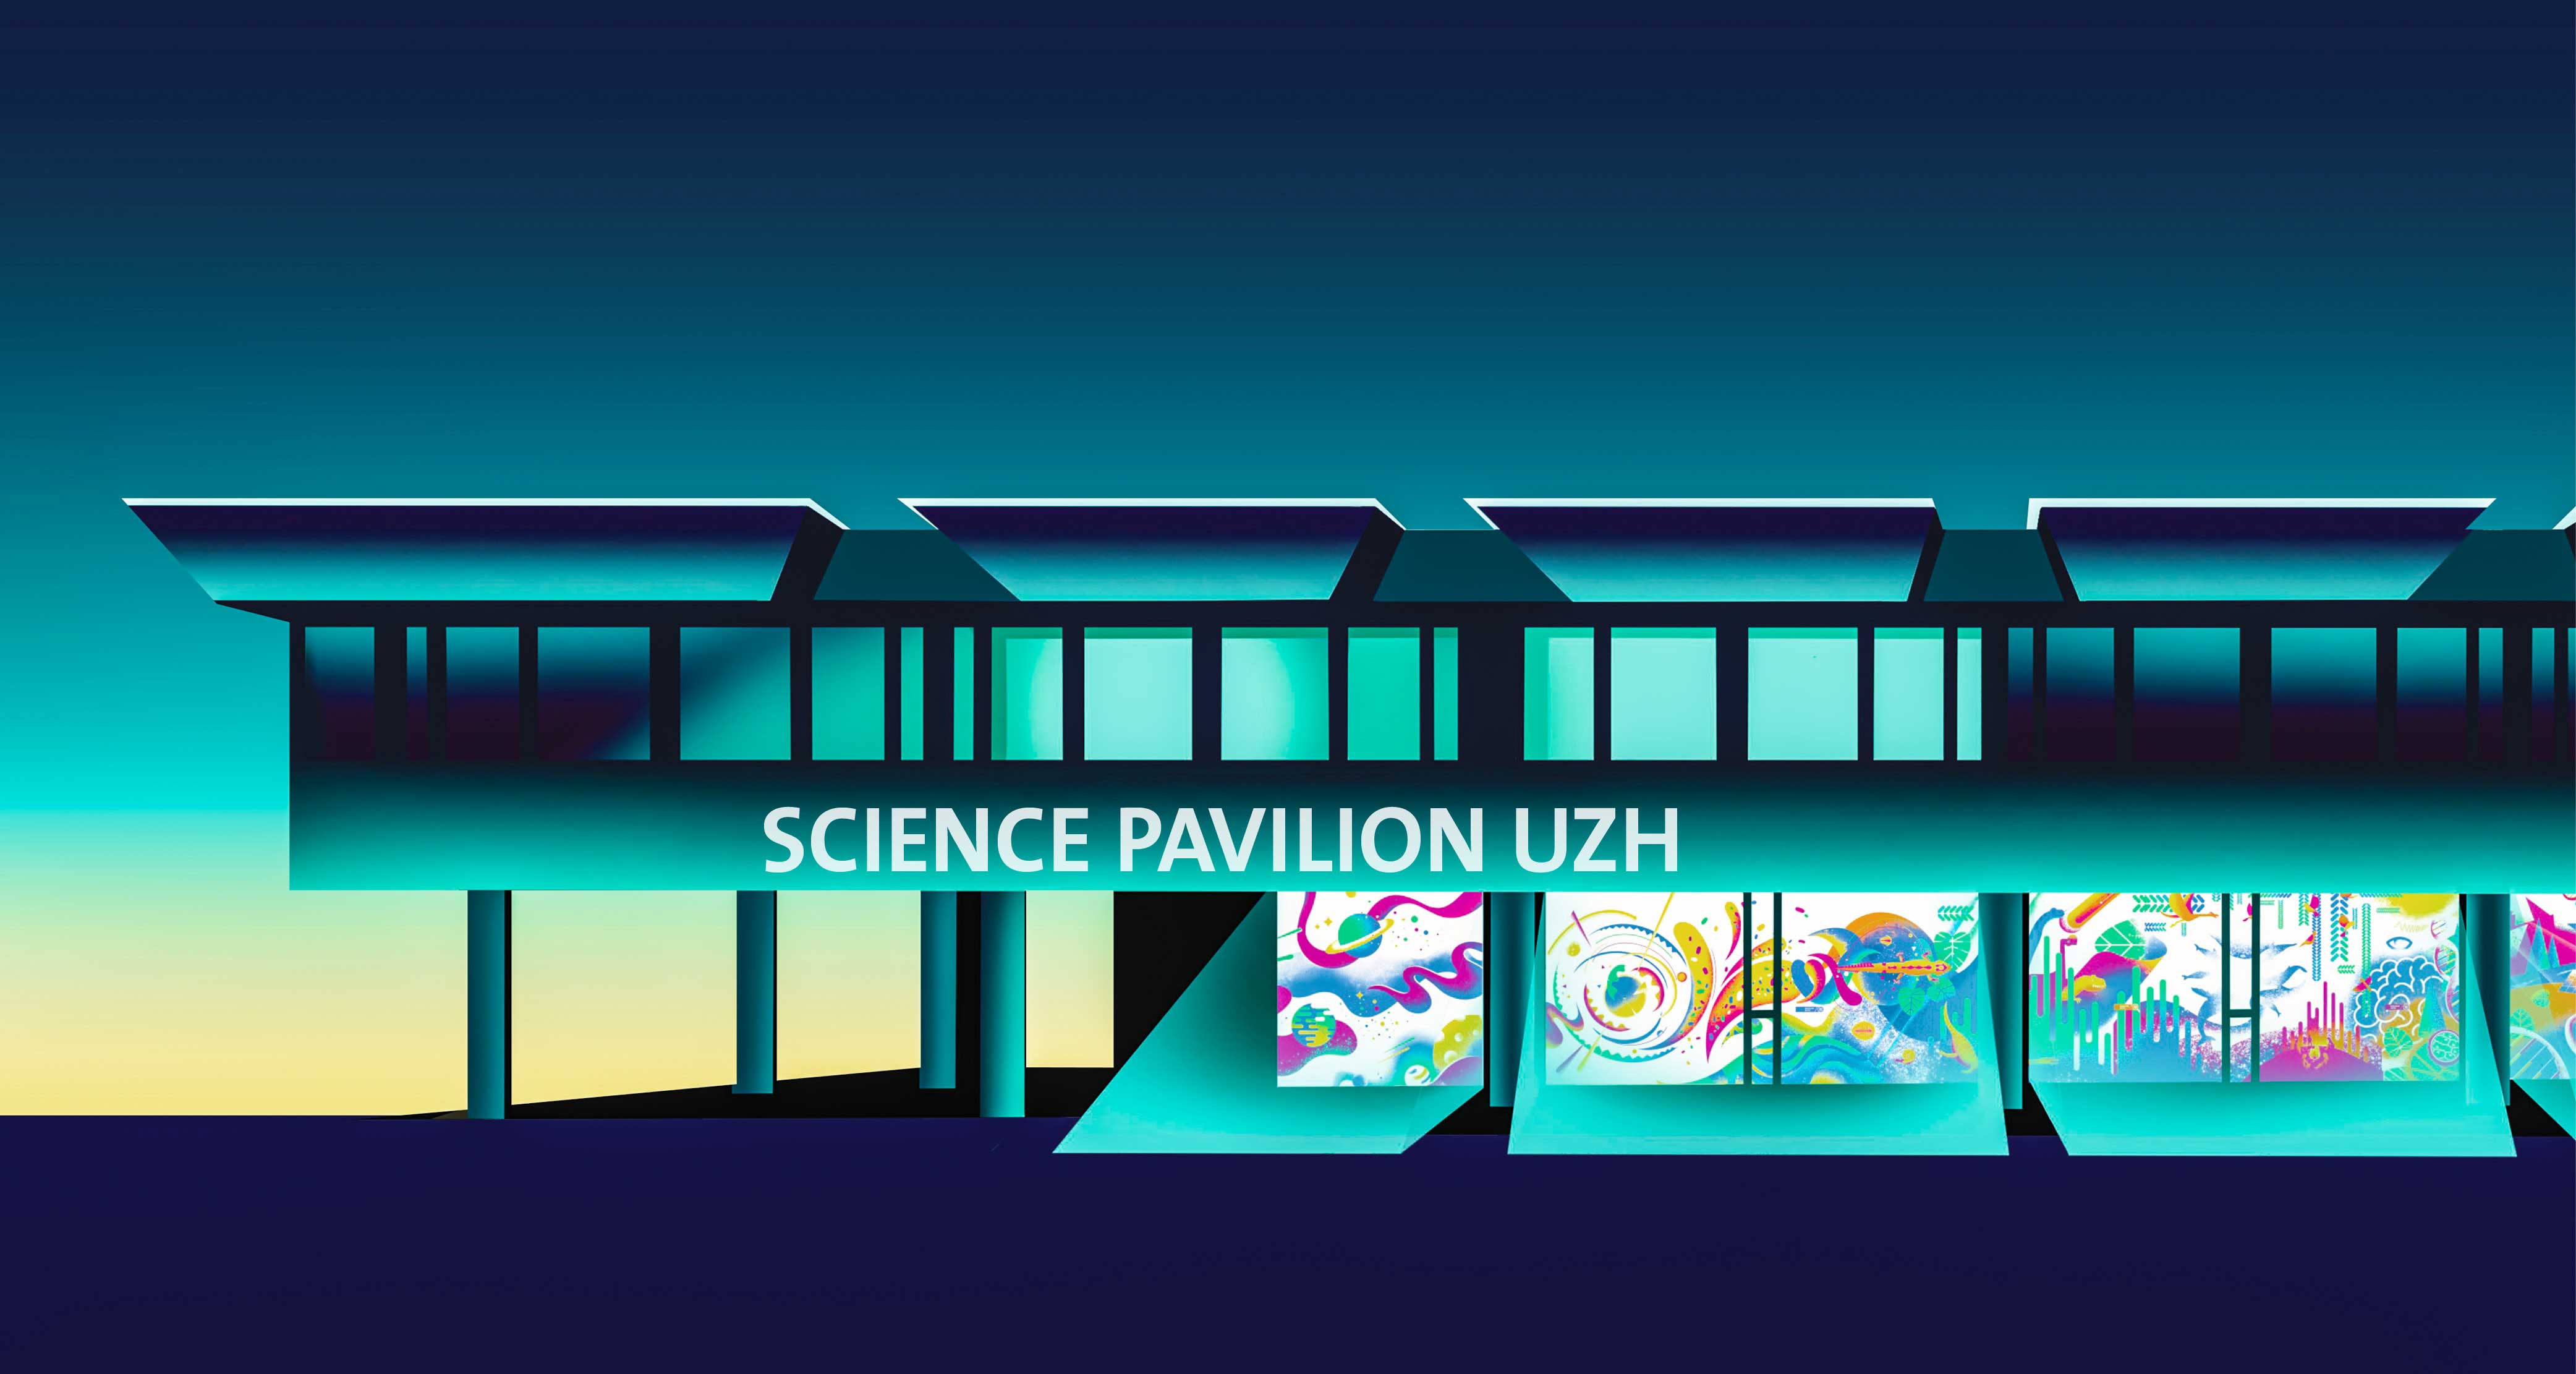 Illustration des Science Pavilion UZH. Die bunten Fenster des Museums heben sich von einem blaugrünen Hintergrund ab.